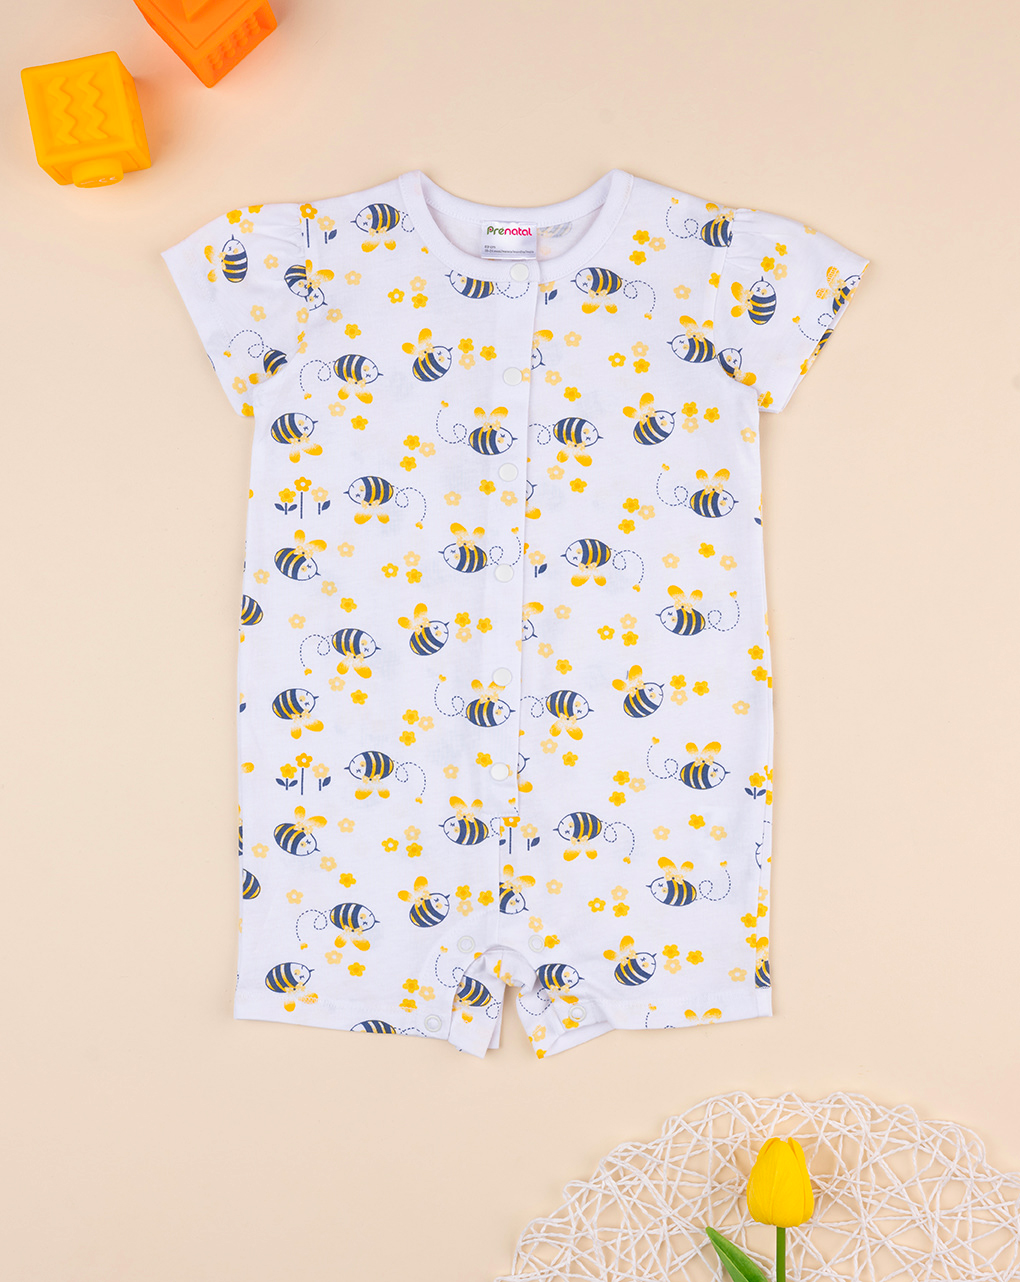 βρεφική ολόσωμη κοντή πιτζάμα με μέλισσες για κορίτσι